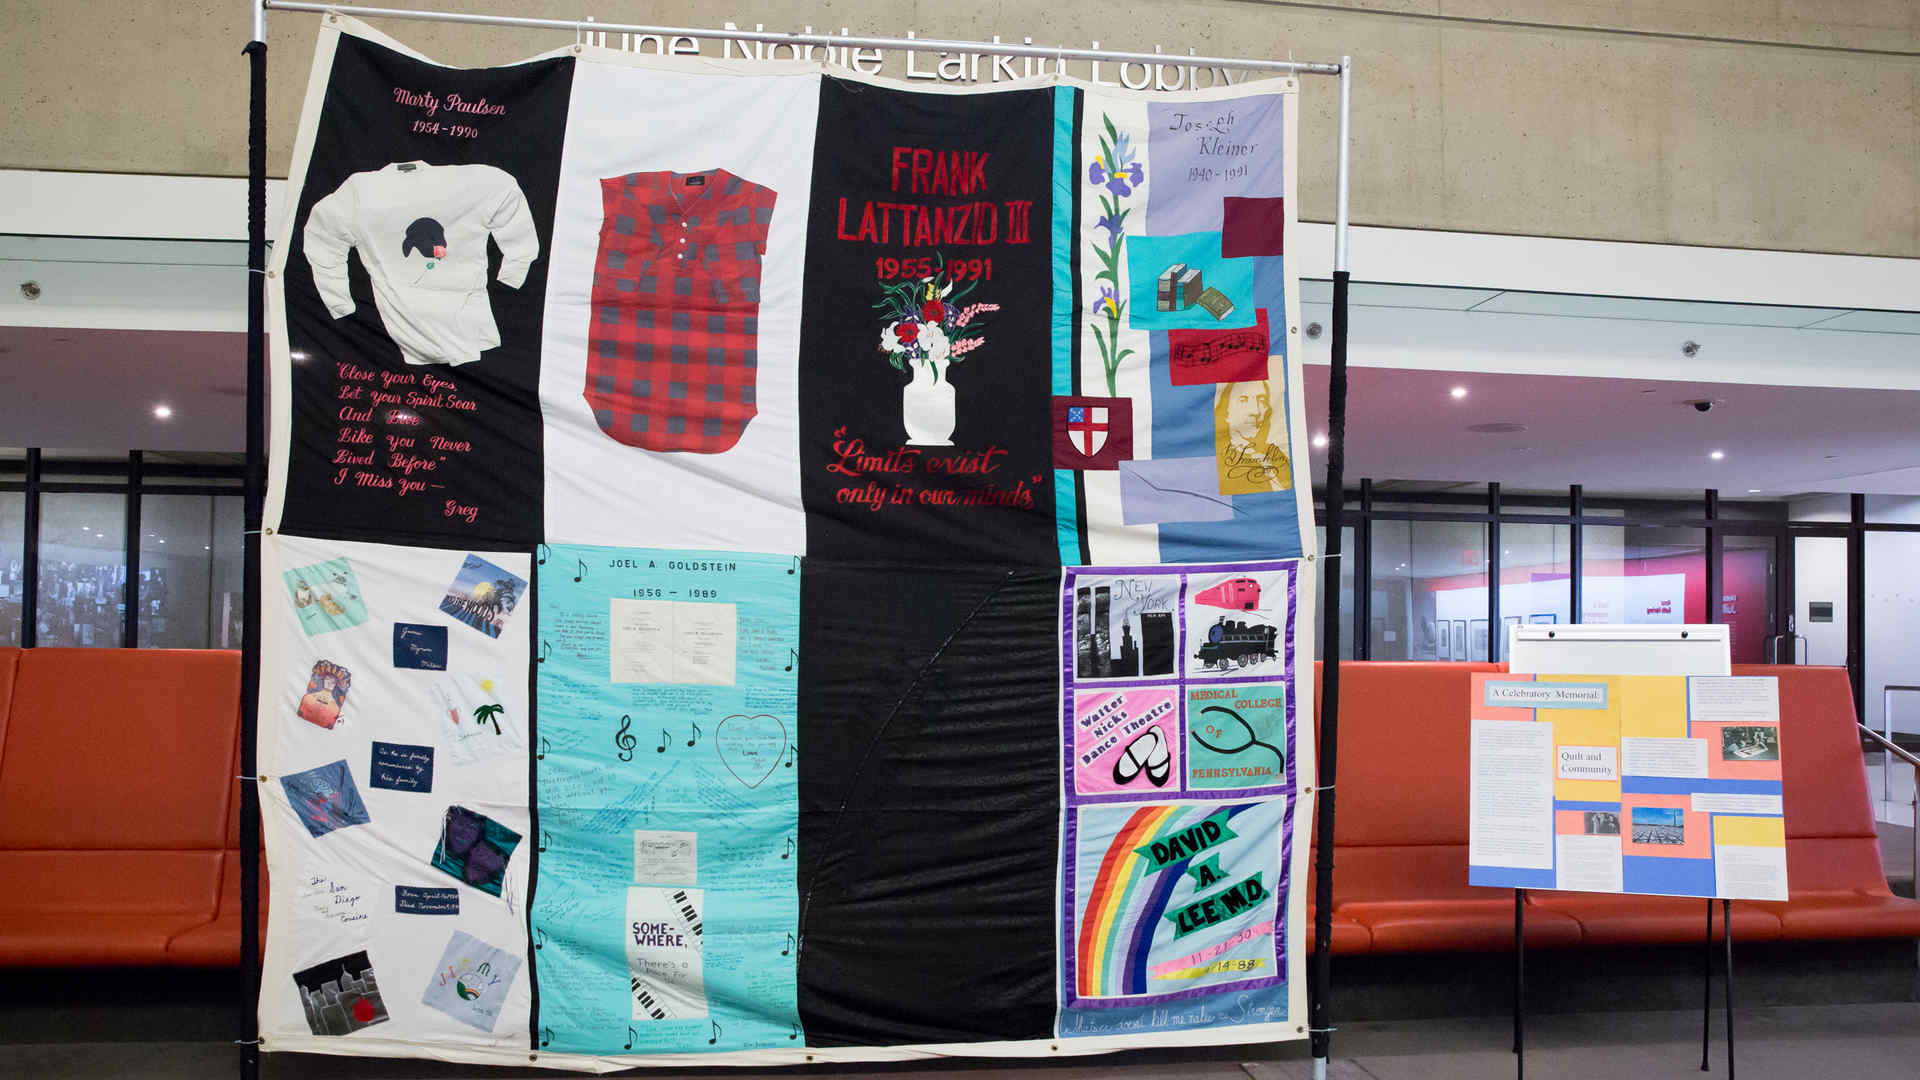 AIDS memorial quilt